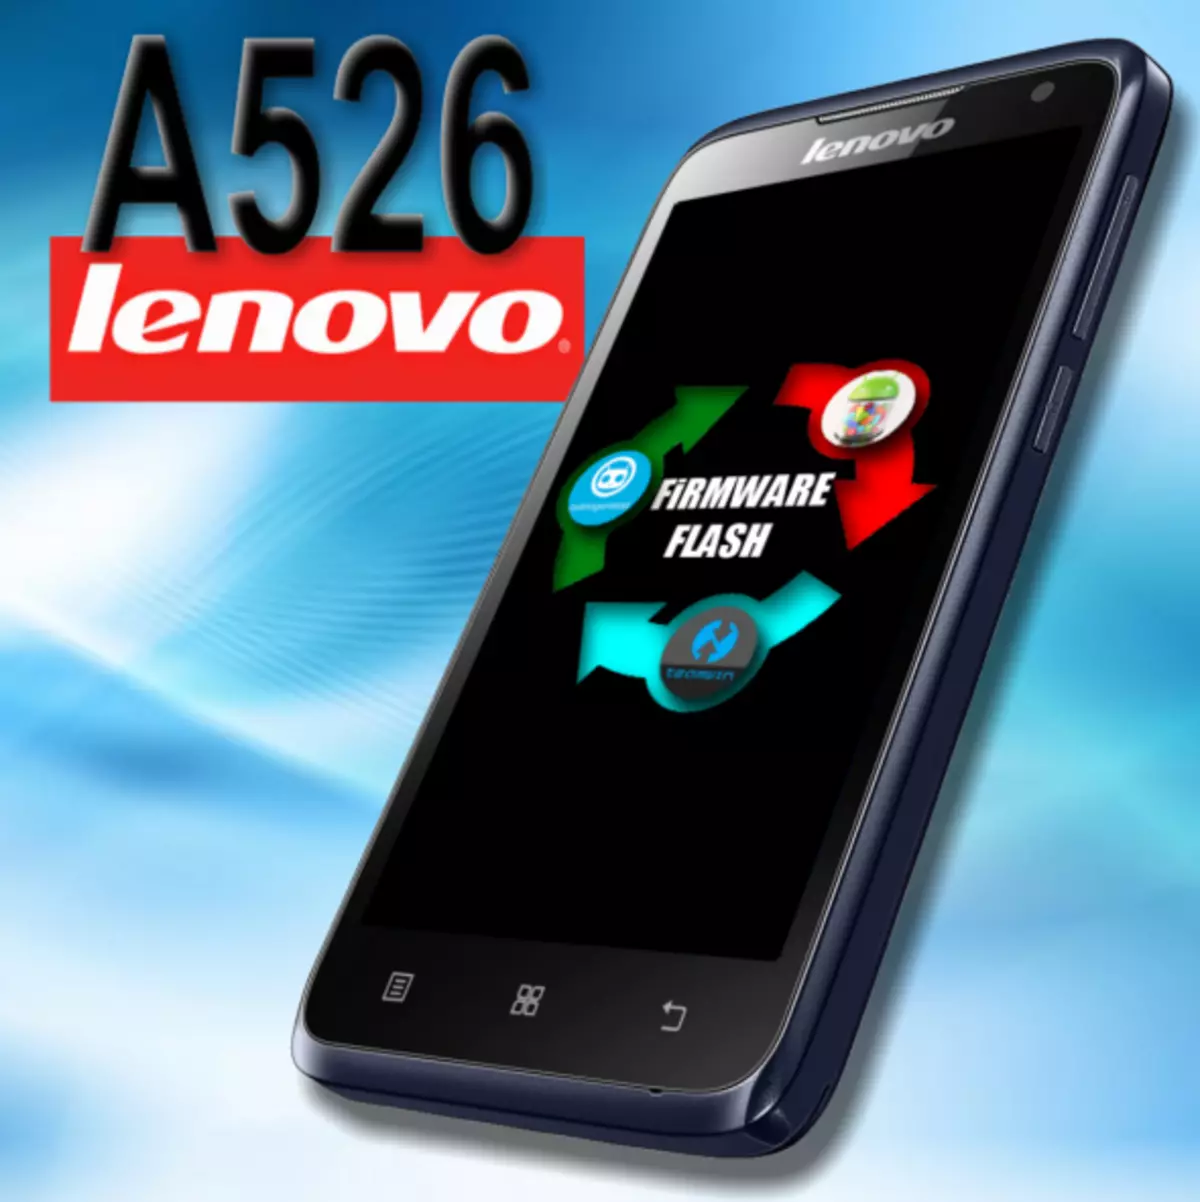 Firmware Lenovo A526.